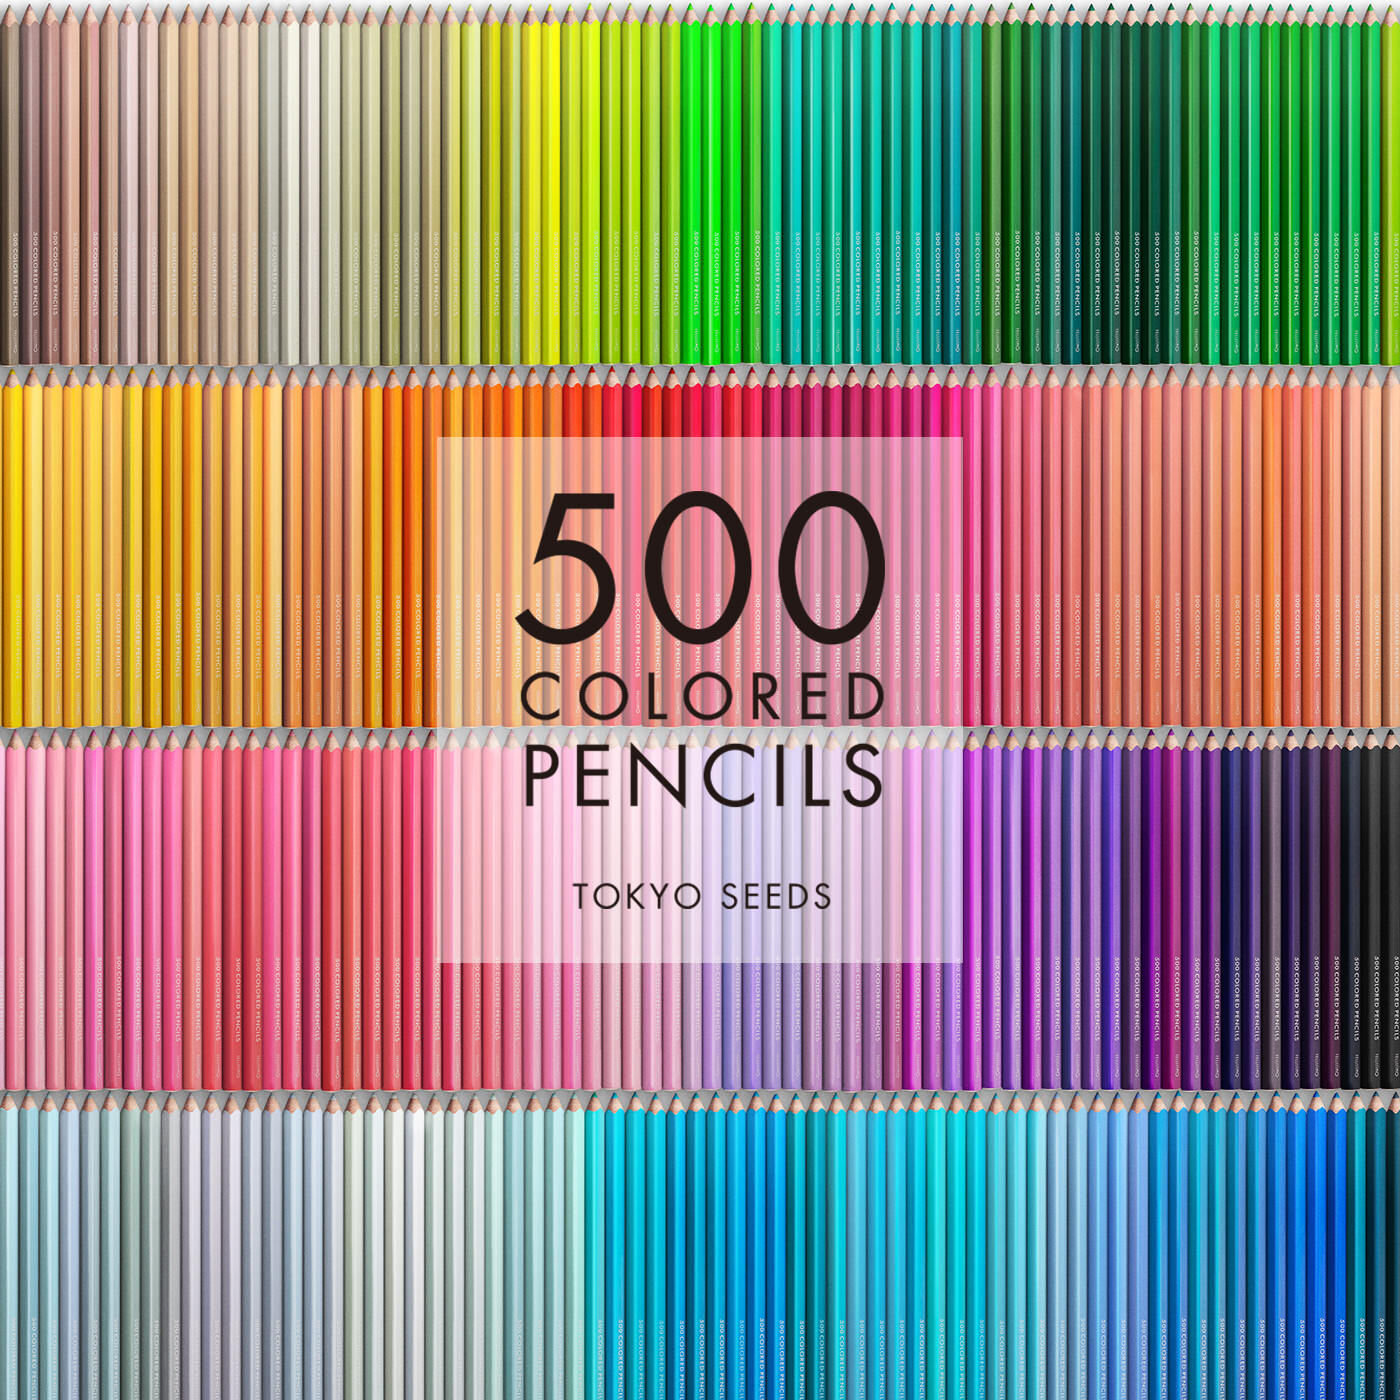 Real Stock|【23/500 SWEET ENCHILADA】500色の色えんぴつ TOKYO SEEDS|1992年、世界初の「500色」という膨大な色数の色えんぴつが誕生して以来、その販売数は発売当初から合わせると、世界55ヵ国10万セット以上。今回、メイド・イン・ジャパンにこだわり、すべてが新しく生まれ変わって登場しました。